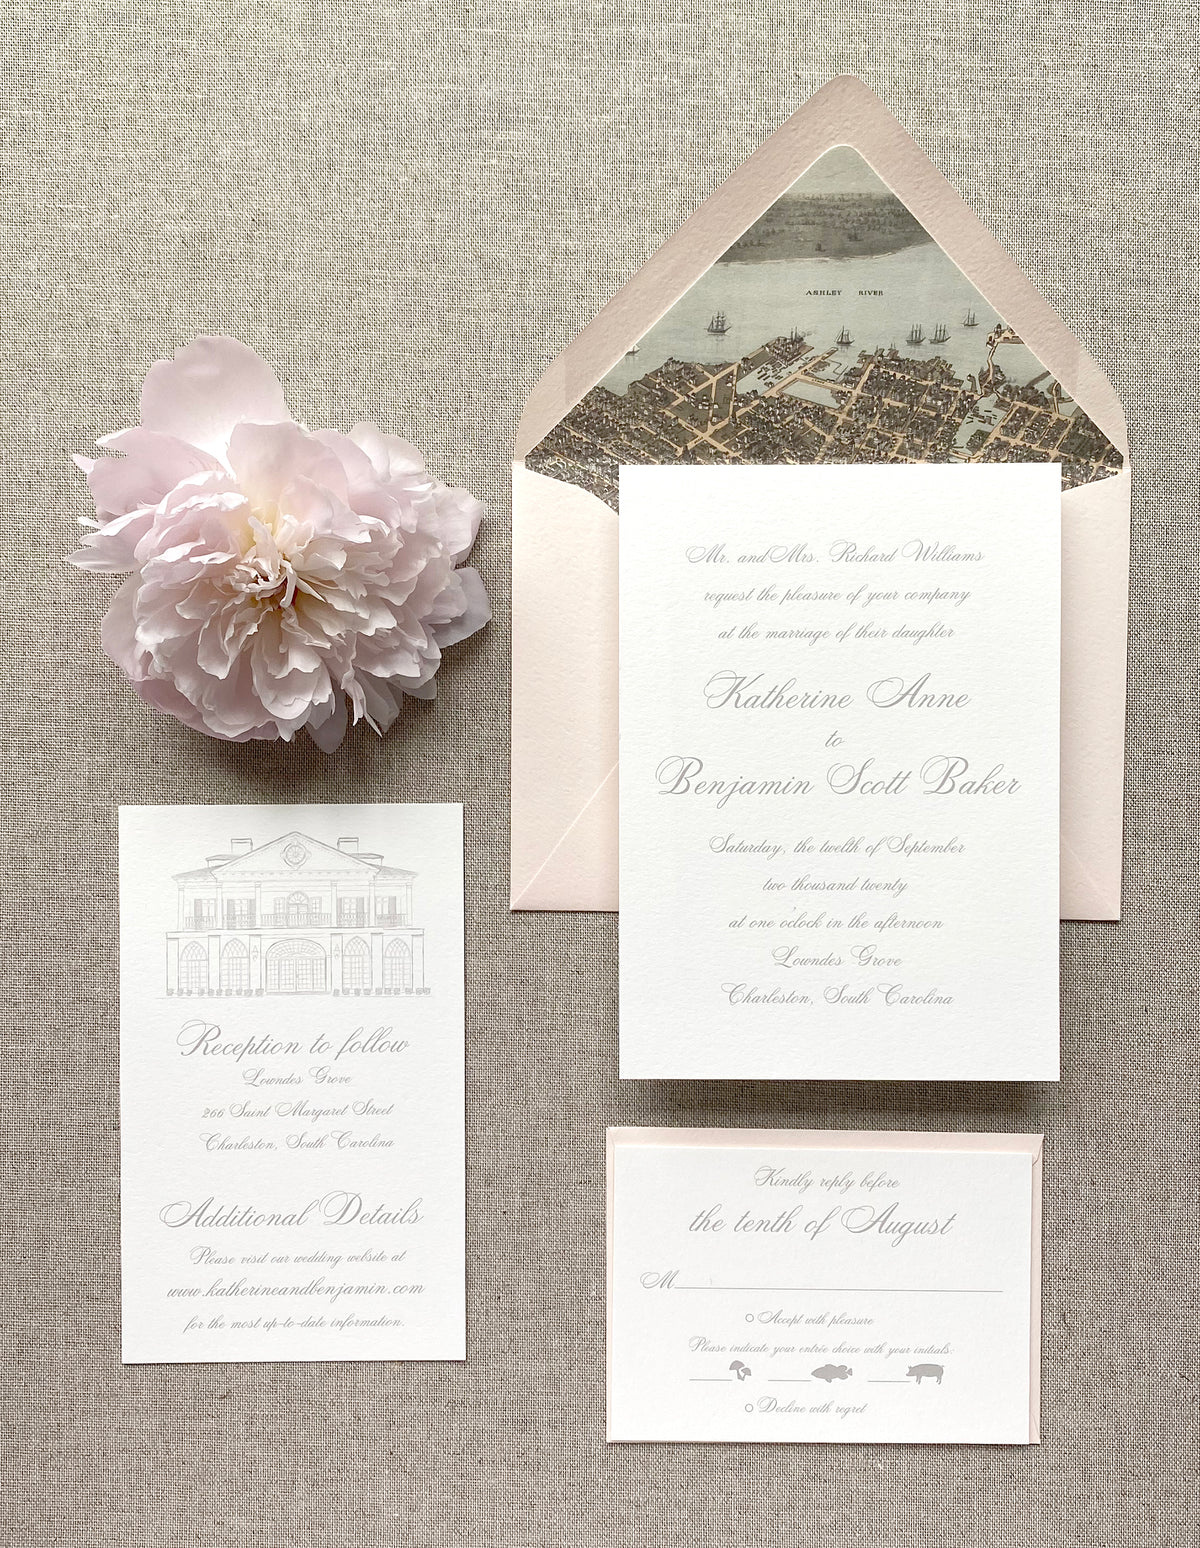 Classic Script Wedding Invitation by Scotti Cline Designs